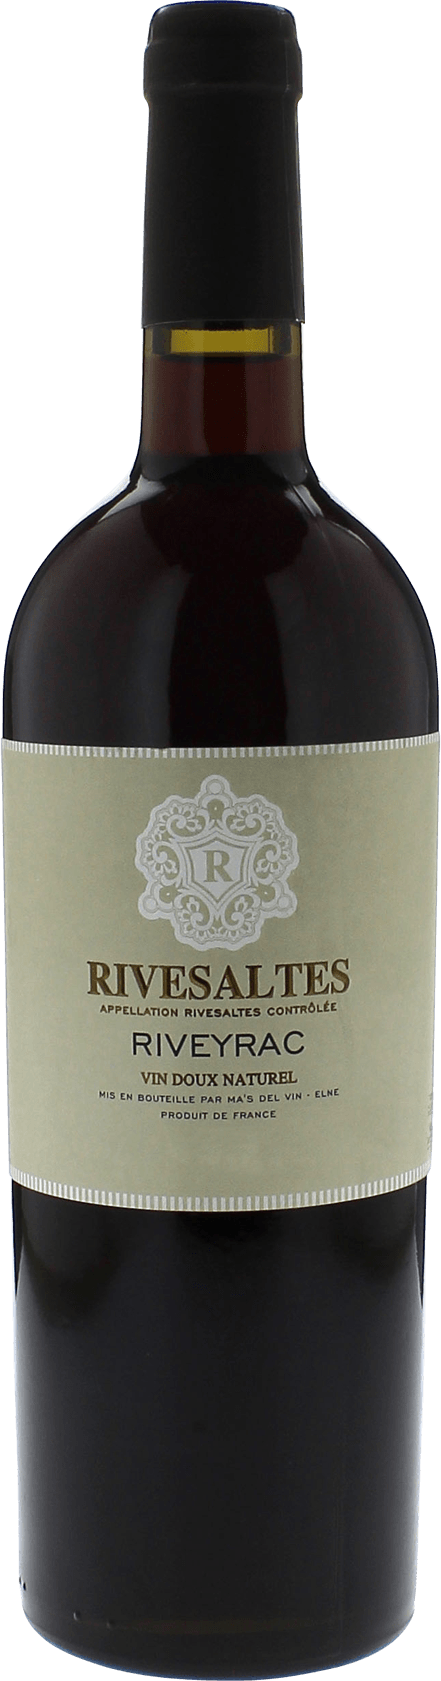 Rivesaltes riveyrac cuve des aigles 1975 Vin doux naturel Rivesaltes, Vin doux naturel